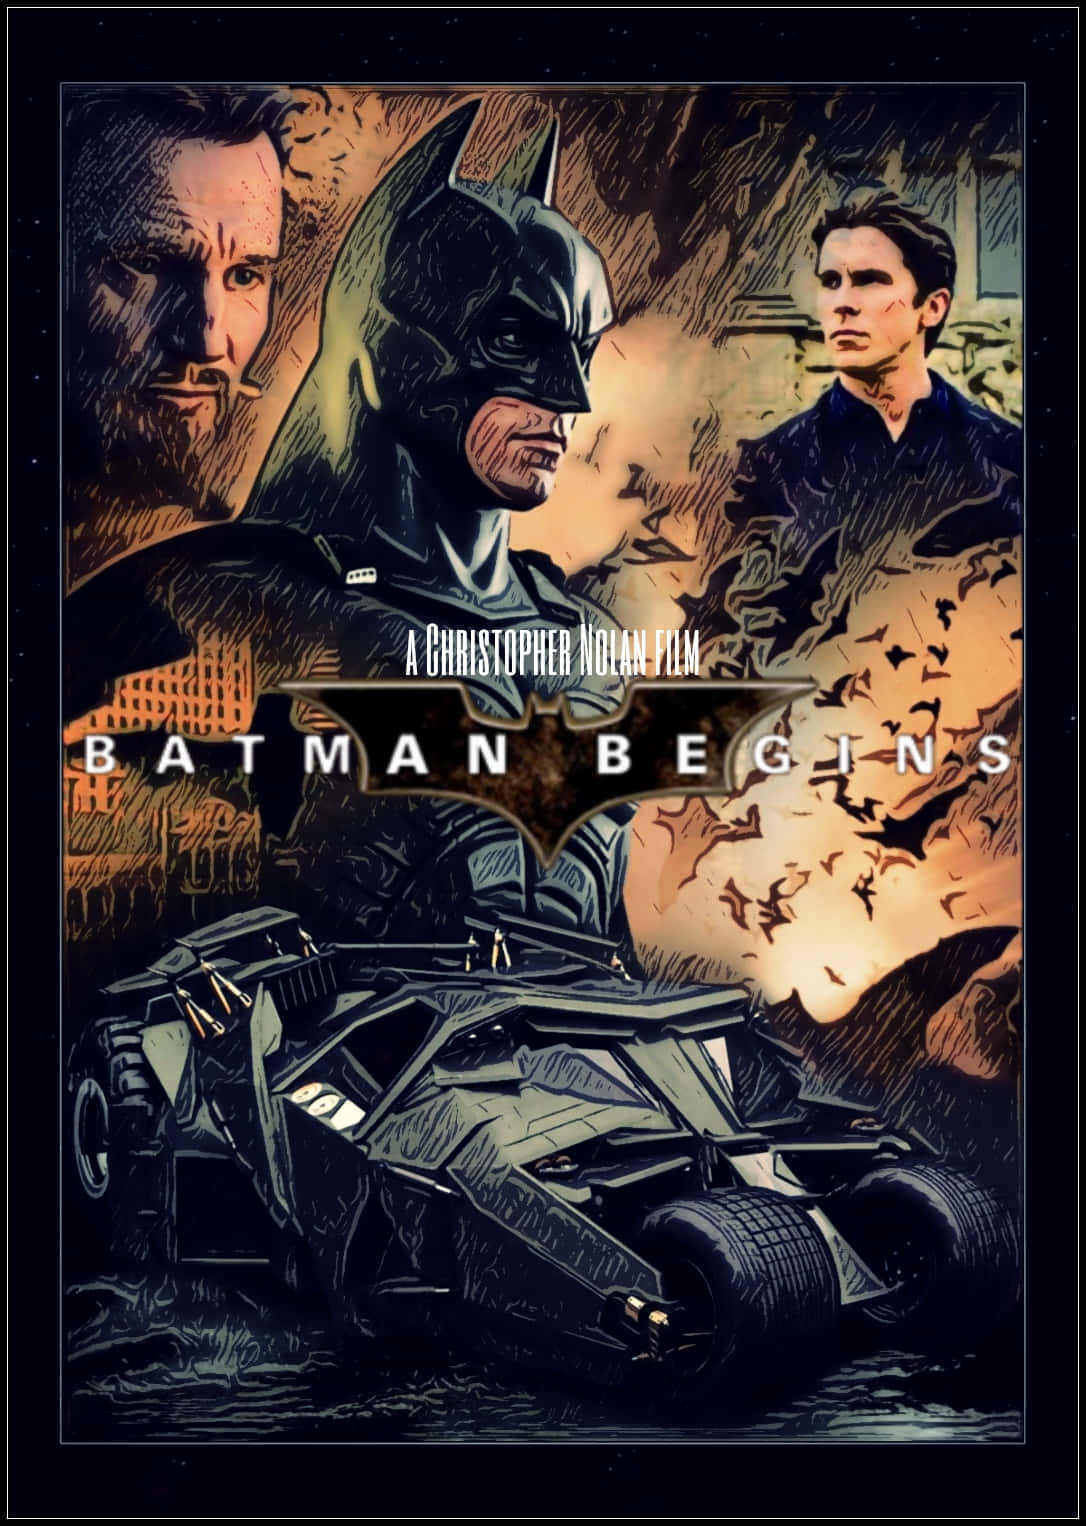 lego batman begins poster